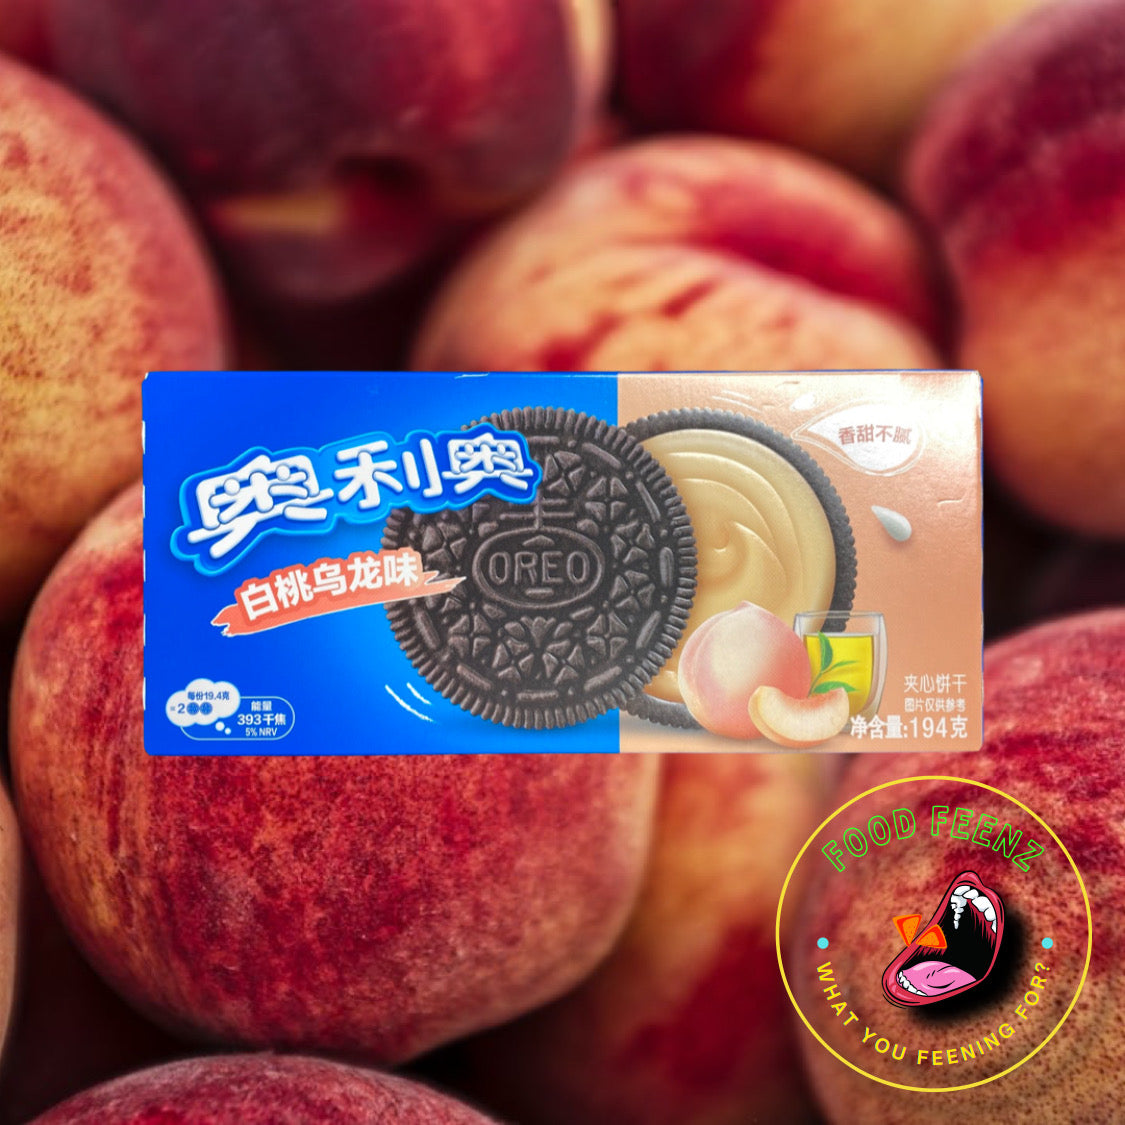 Oreo White Peach Oolong Flavor (China)